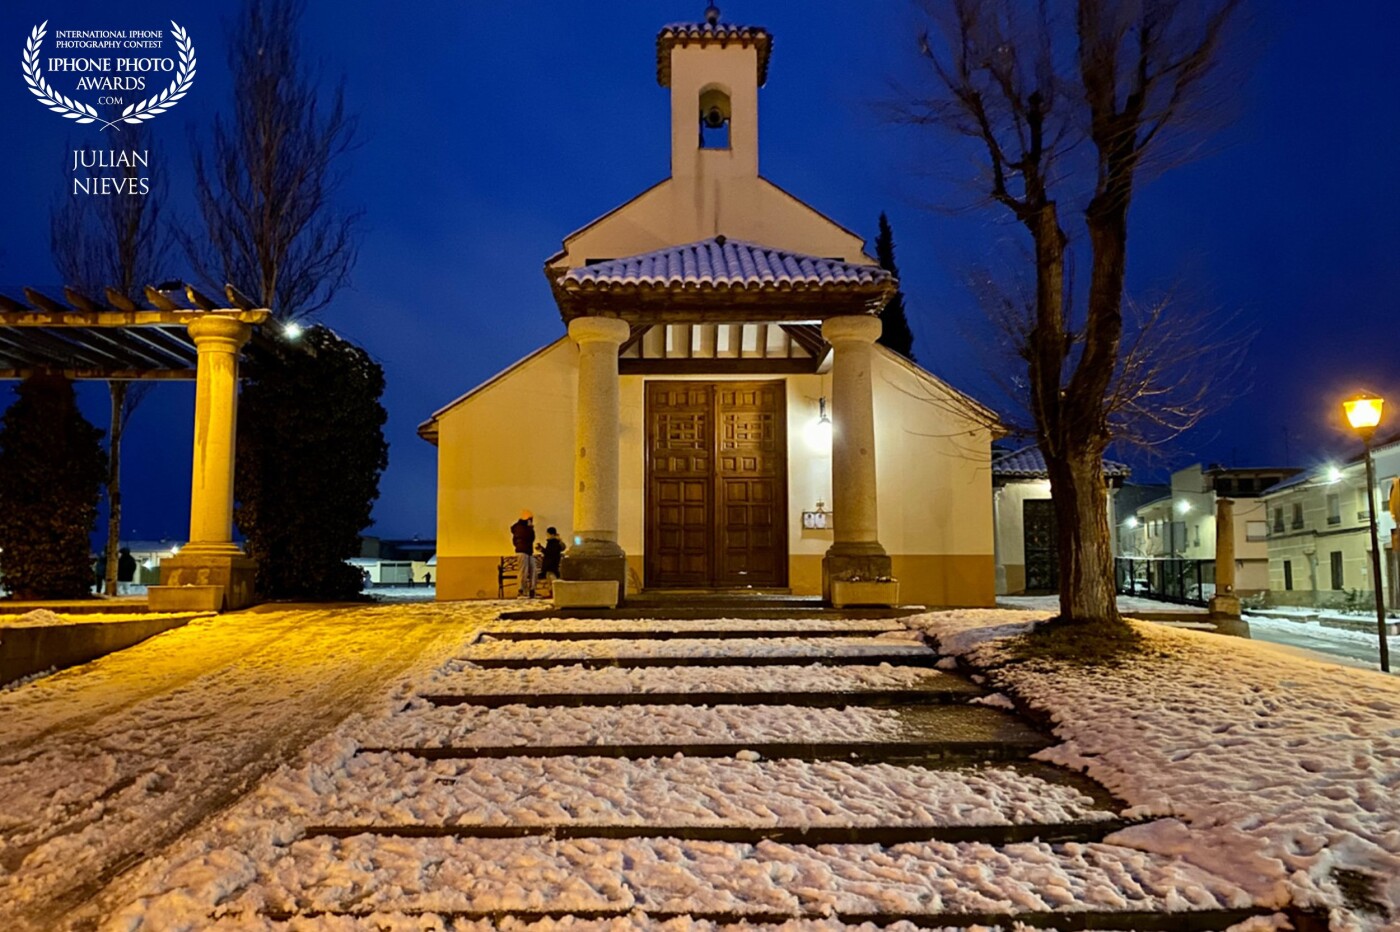 La bonita iglesia de San Sebastián patrón de Madridejos en un atardecer con una copiosa nevada, dándole un toque especial a la imagen.